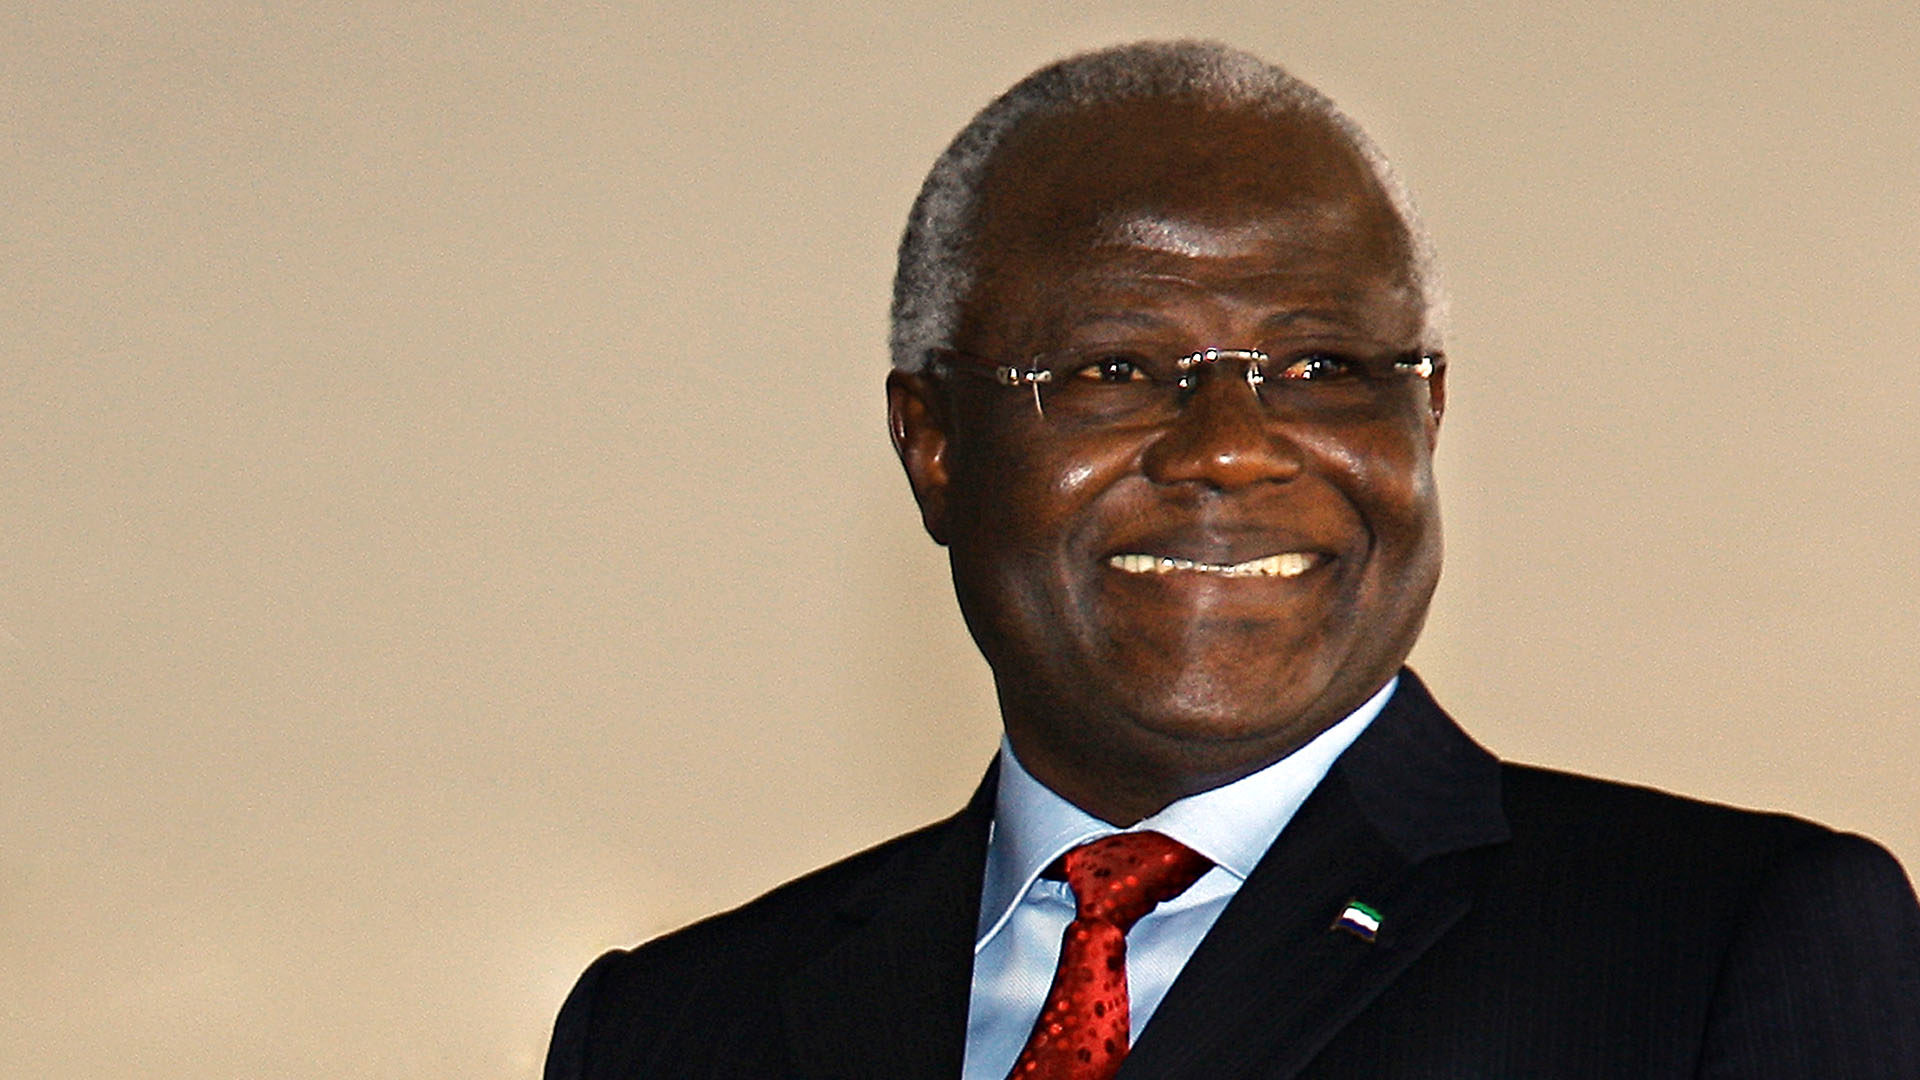 Le président de la République du Sierra Leone, Ernest Bai Koroma. (Flickr/Ministério das Relações Exteriores/CC BY-ND 2.0)